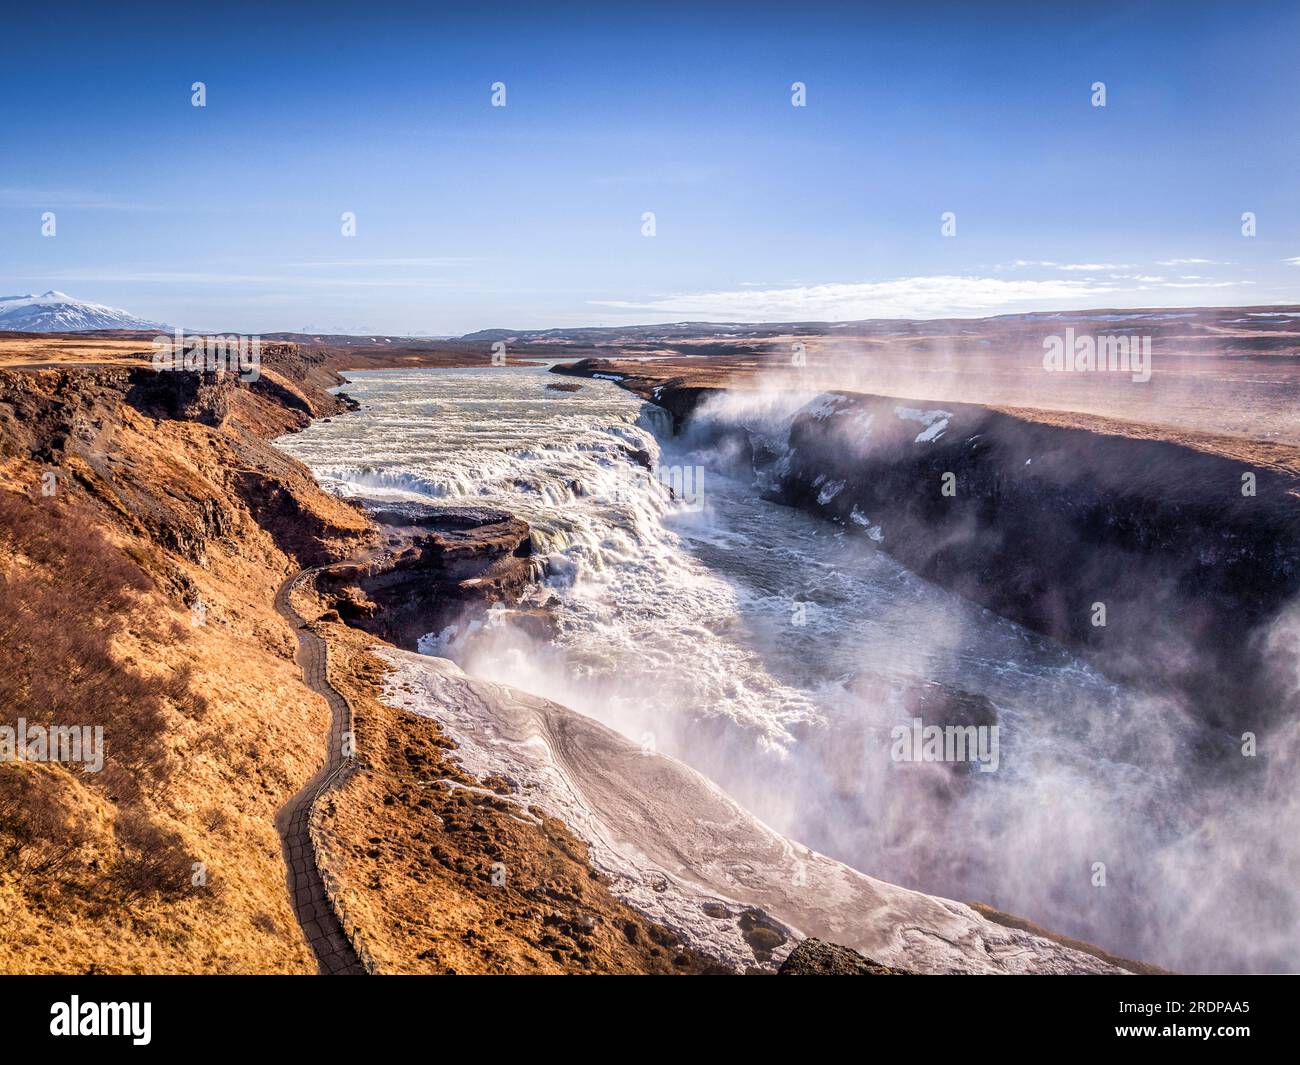 La cascata Gullfoss, la più famosa d'Islanda, in una chiara giornata primaverile. Foto Stock